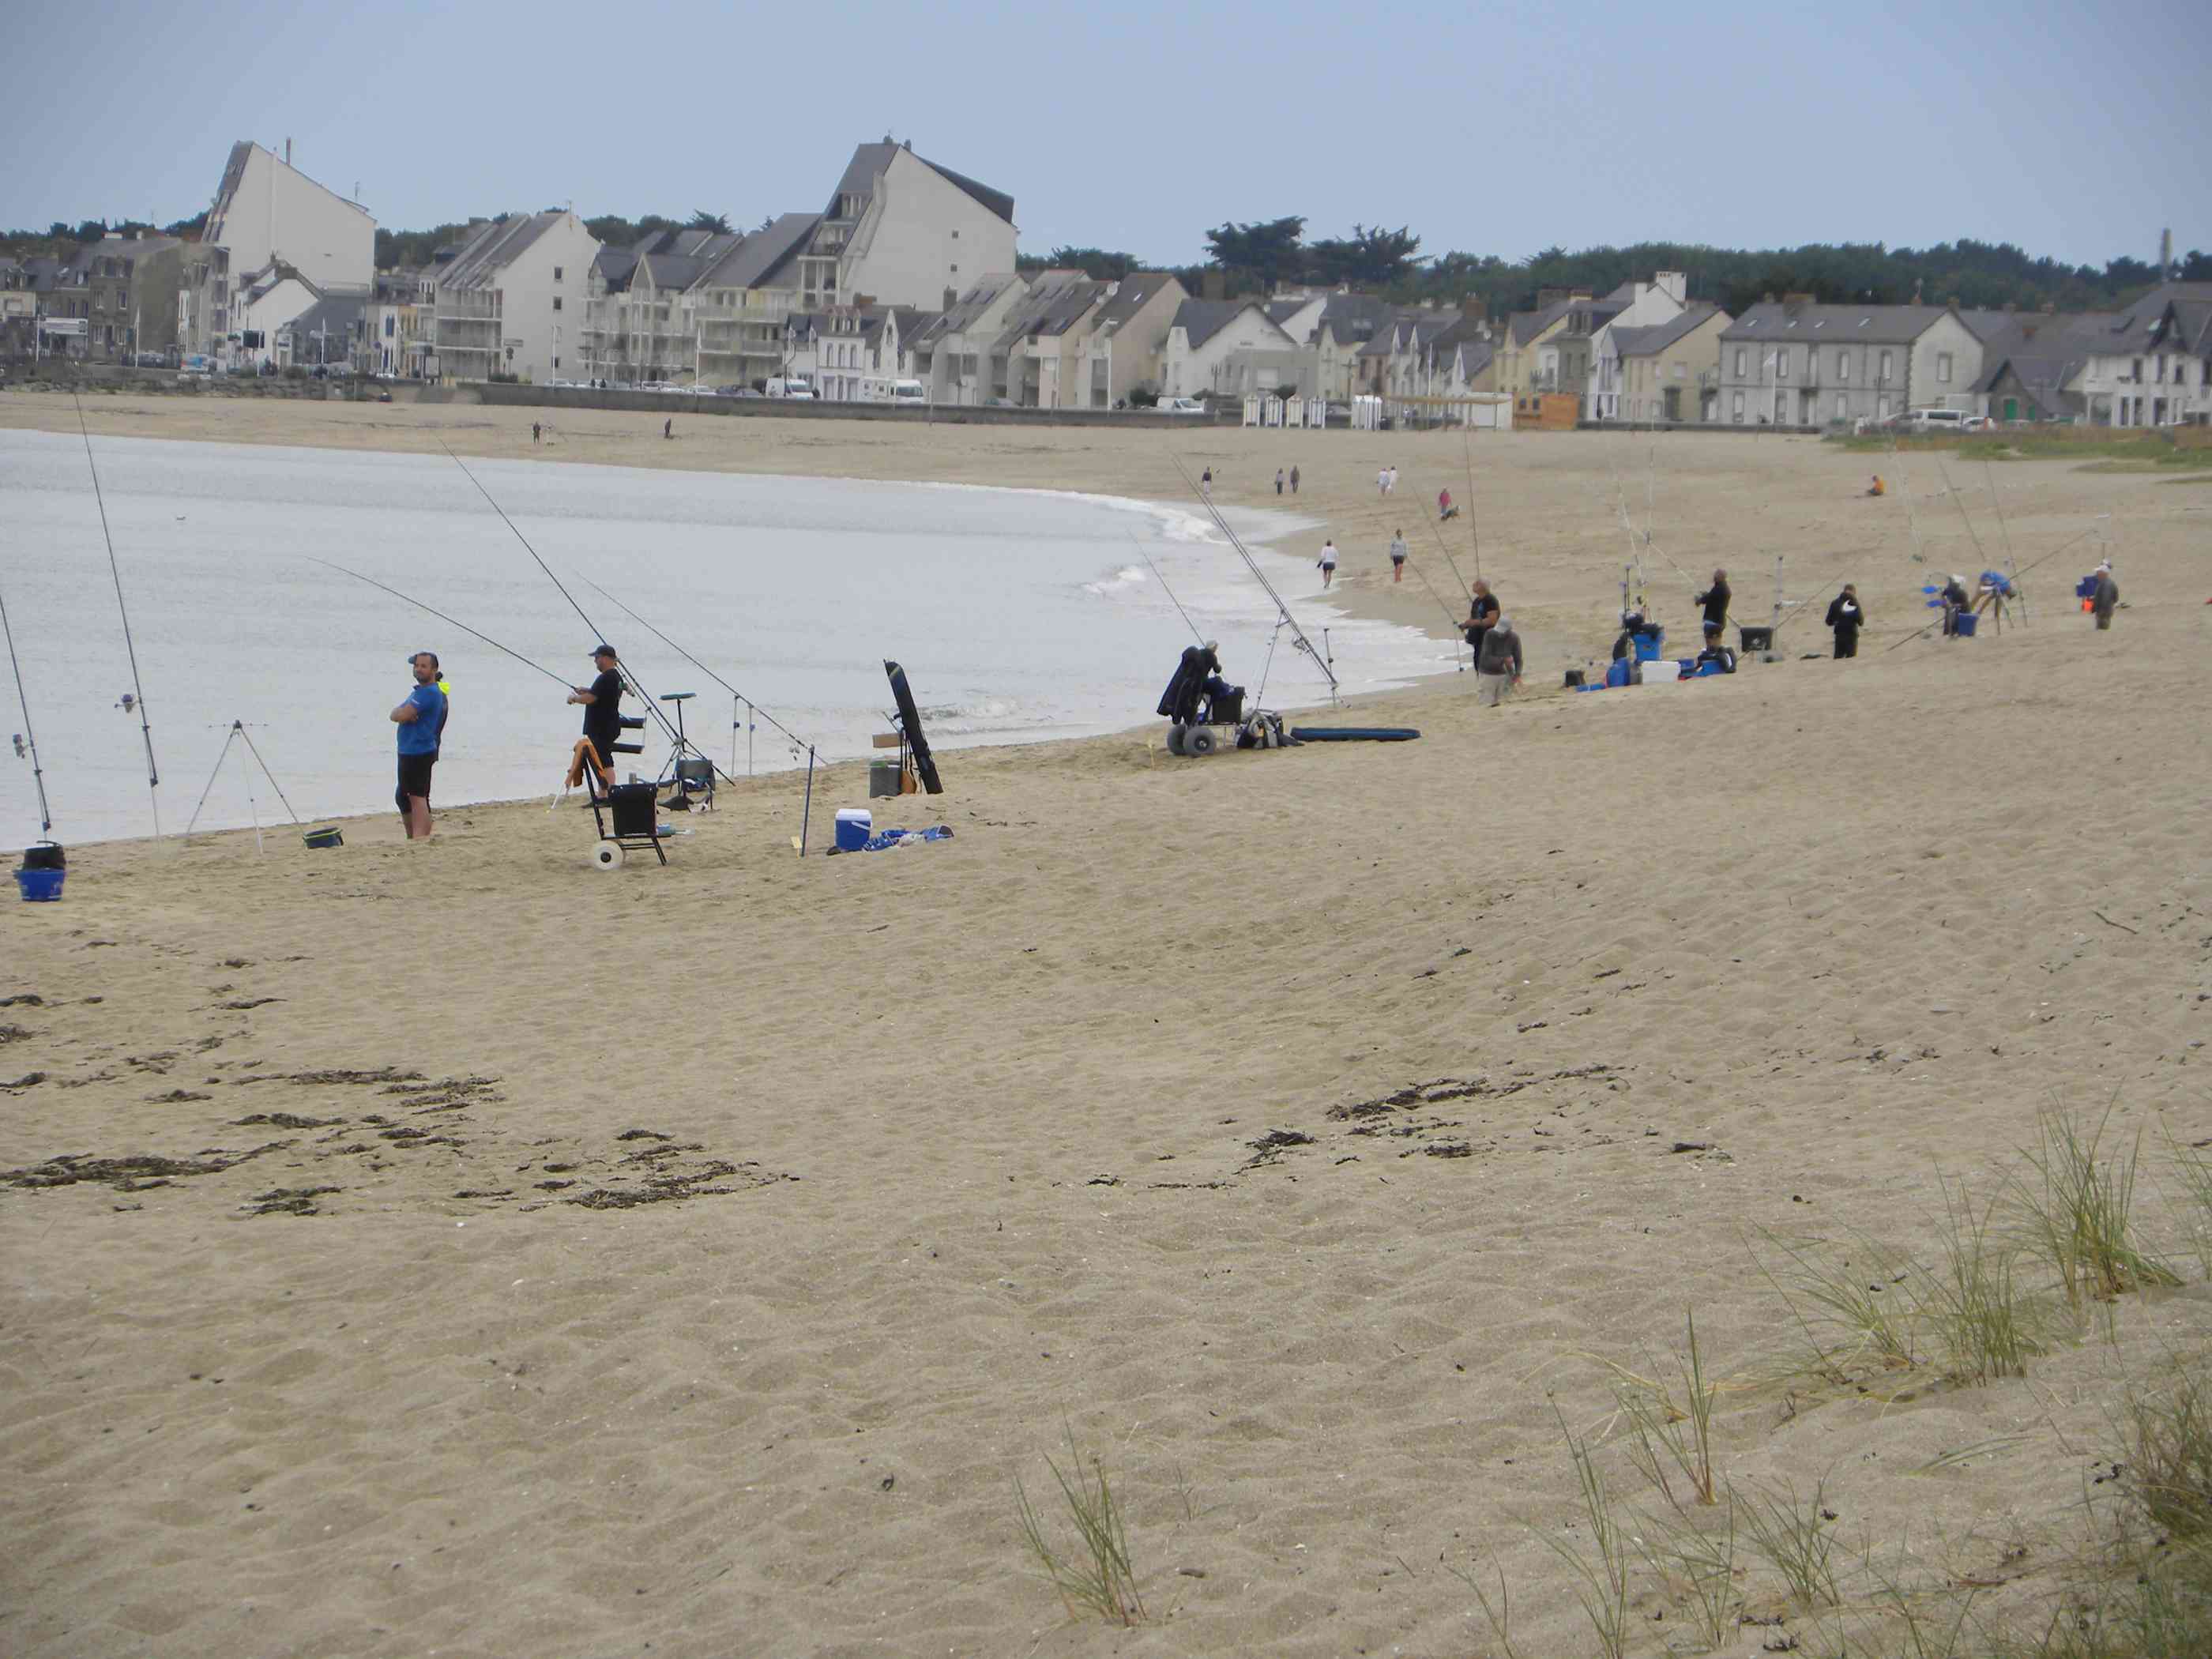 Vue d'ensemble de la plage       # Nos concours fédéraux du 22 mai 2022
      